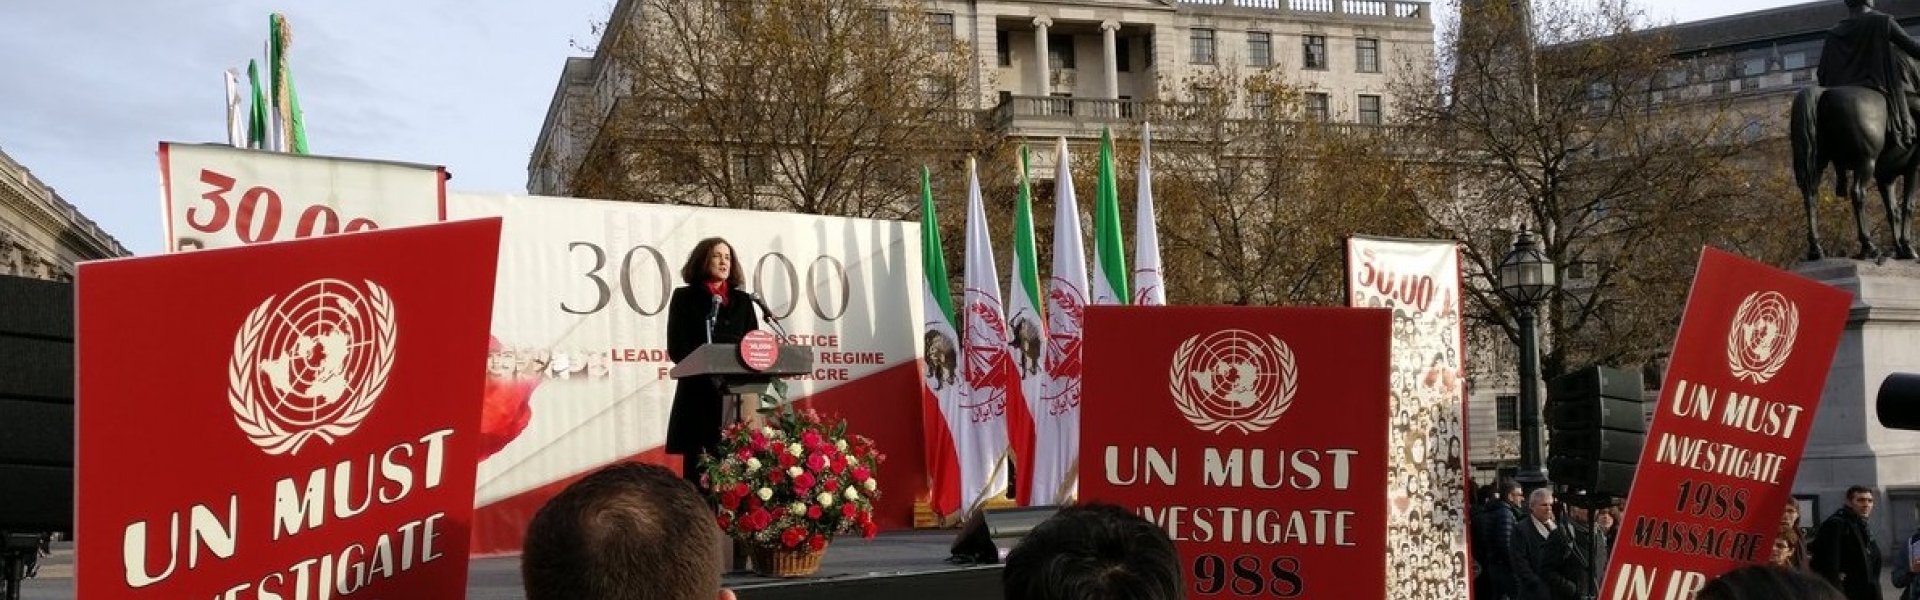 Villiers at Iran rally